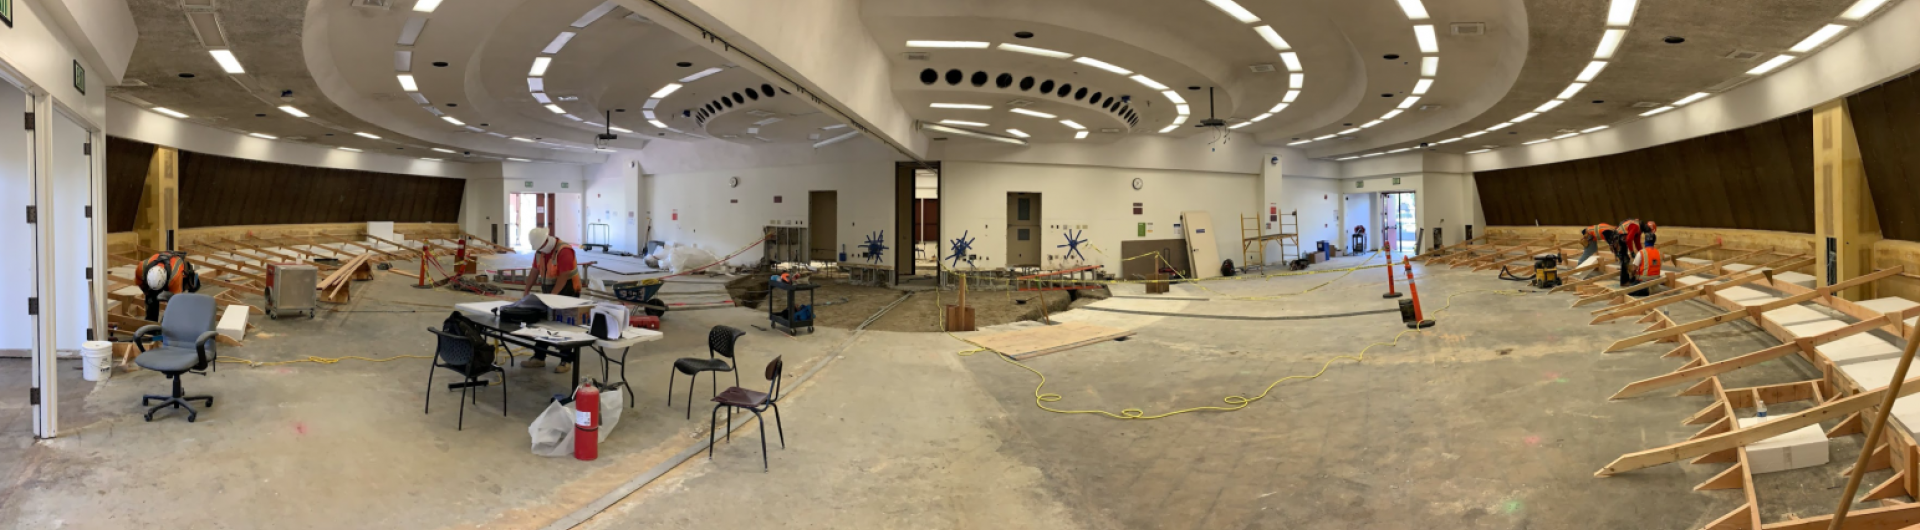 COB Lecture Halls (139, 139A, 140, 140A)  2020 Renovation